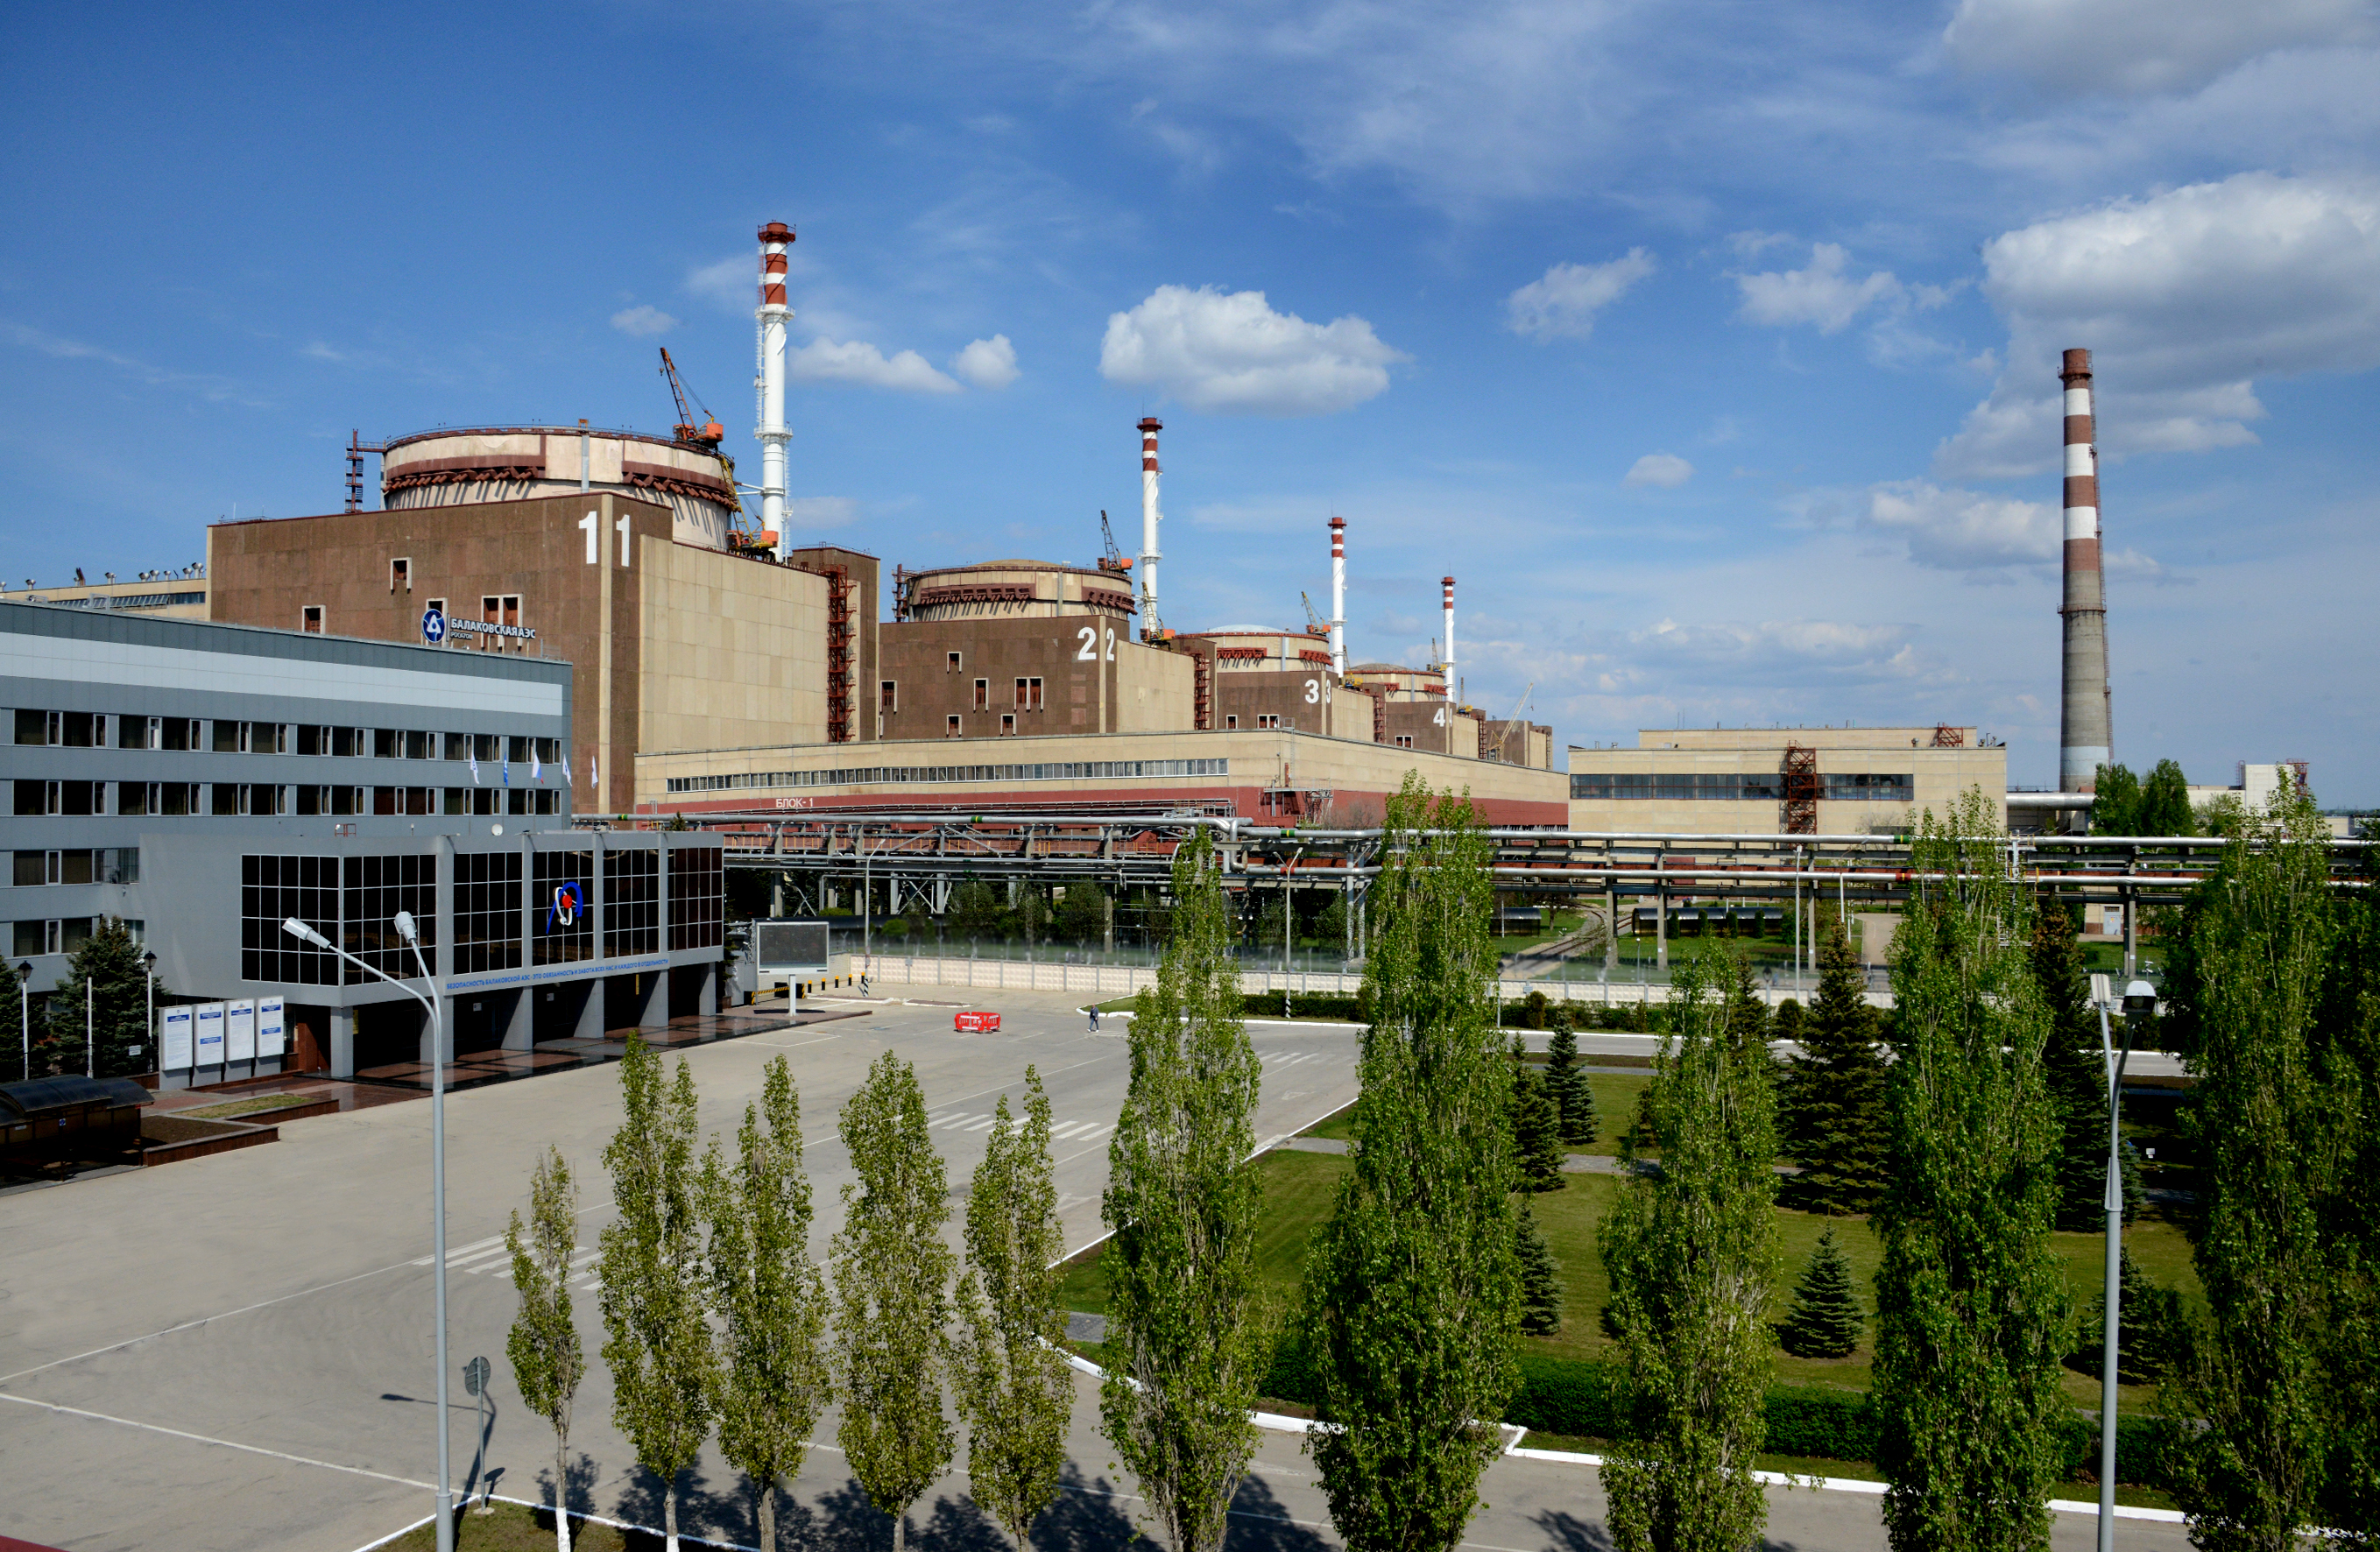 Третья российская АЭС - Балаковская получила сертификат, подтверждающий, что вырабатываемая ею энергия производится с помощью низкоуглеродных источников